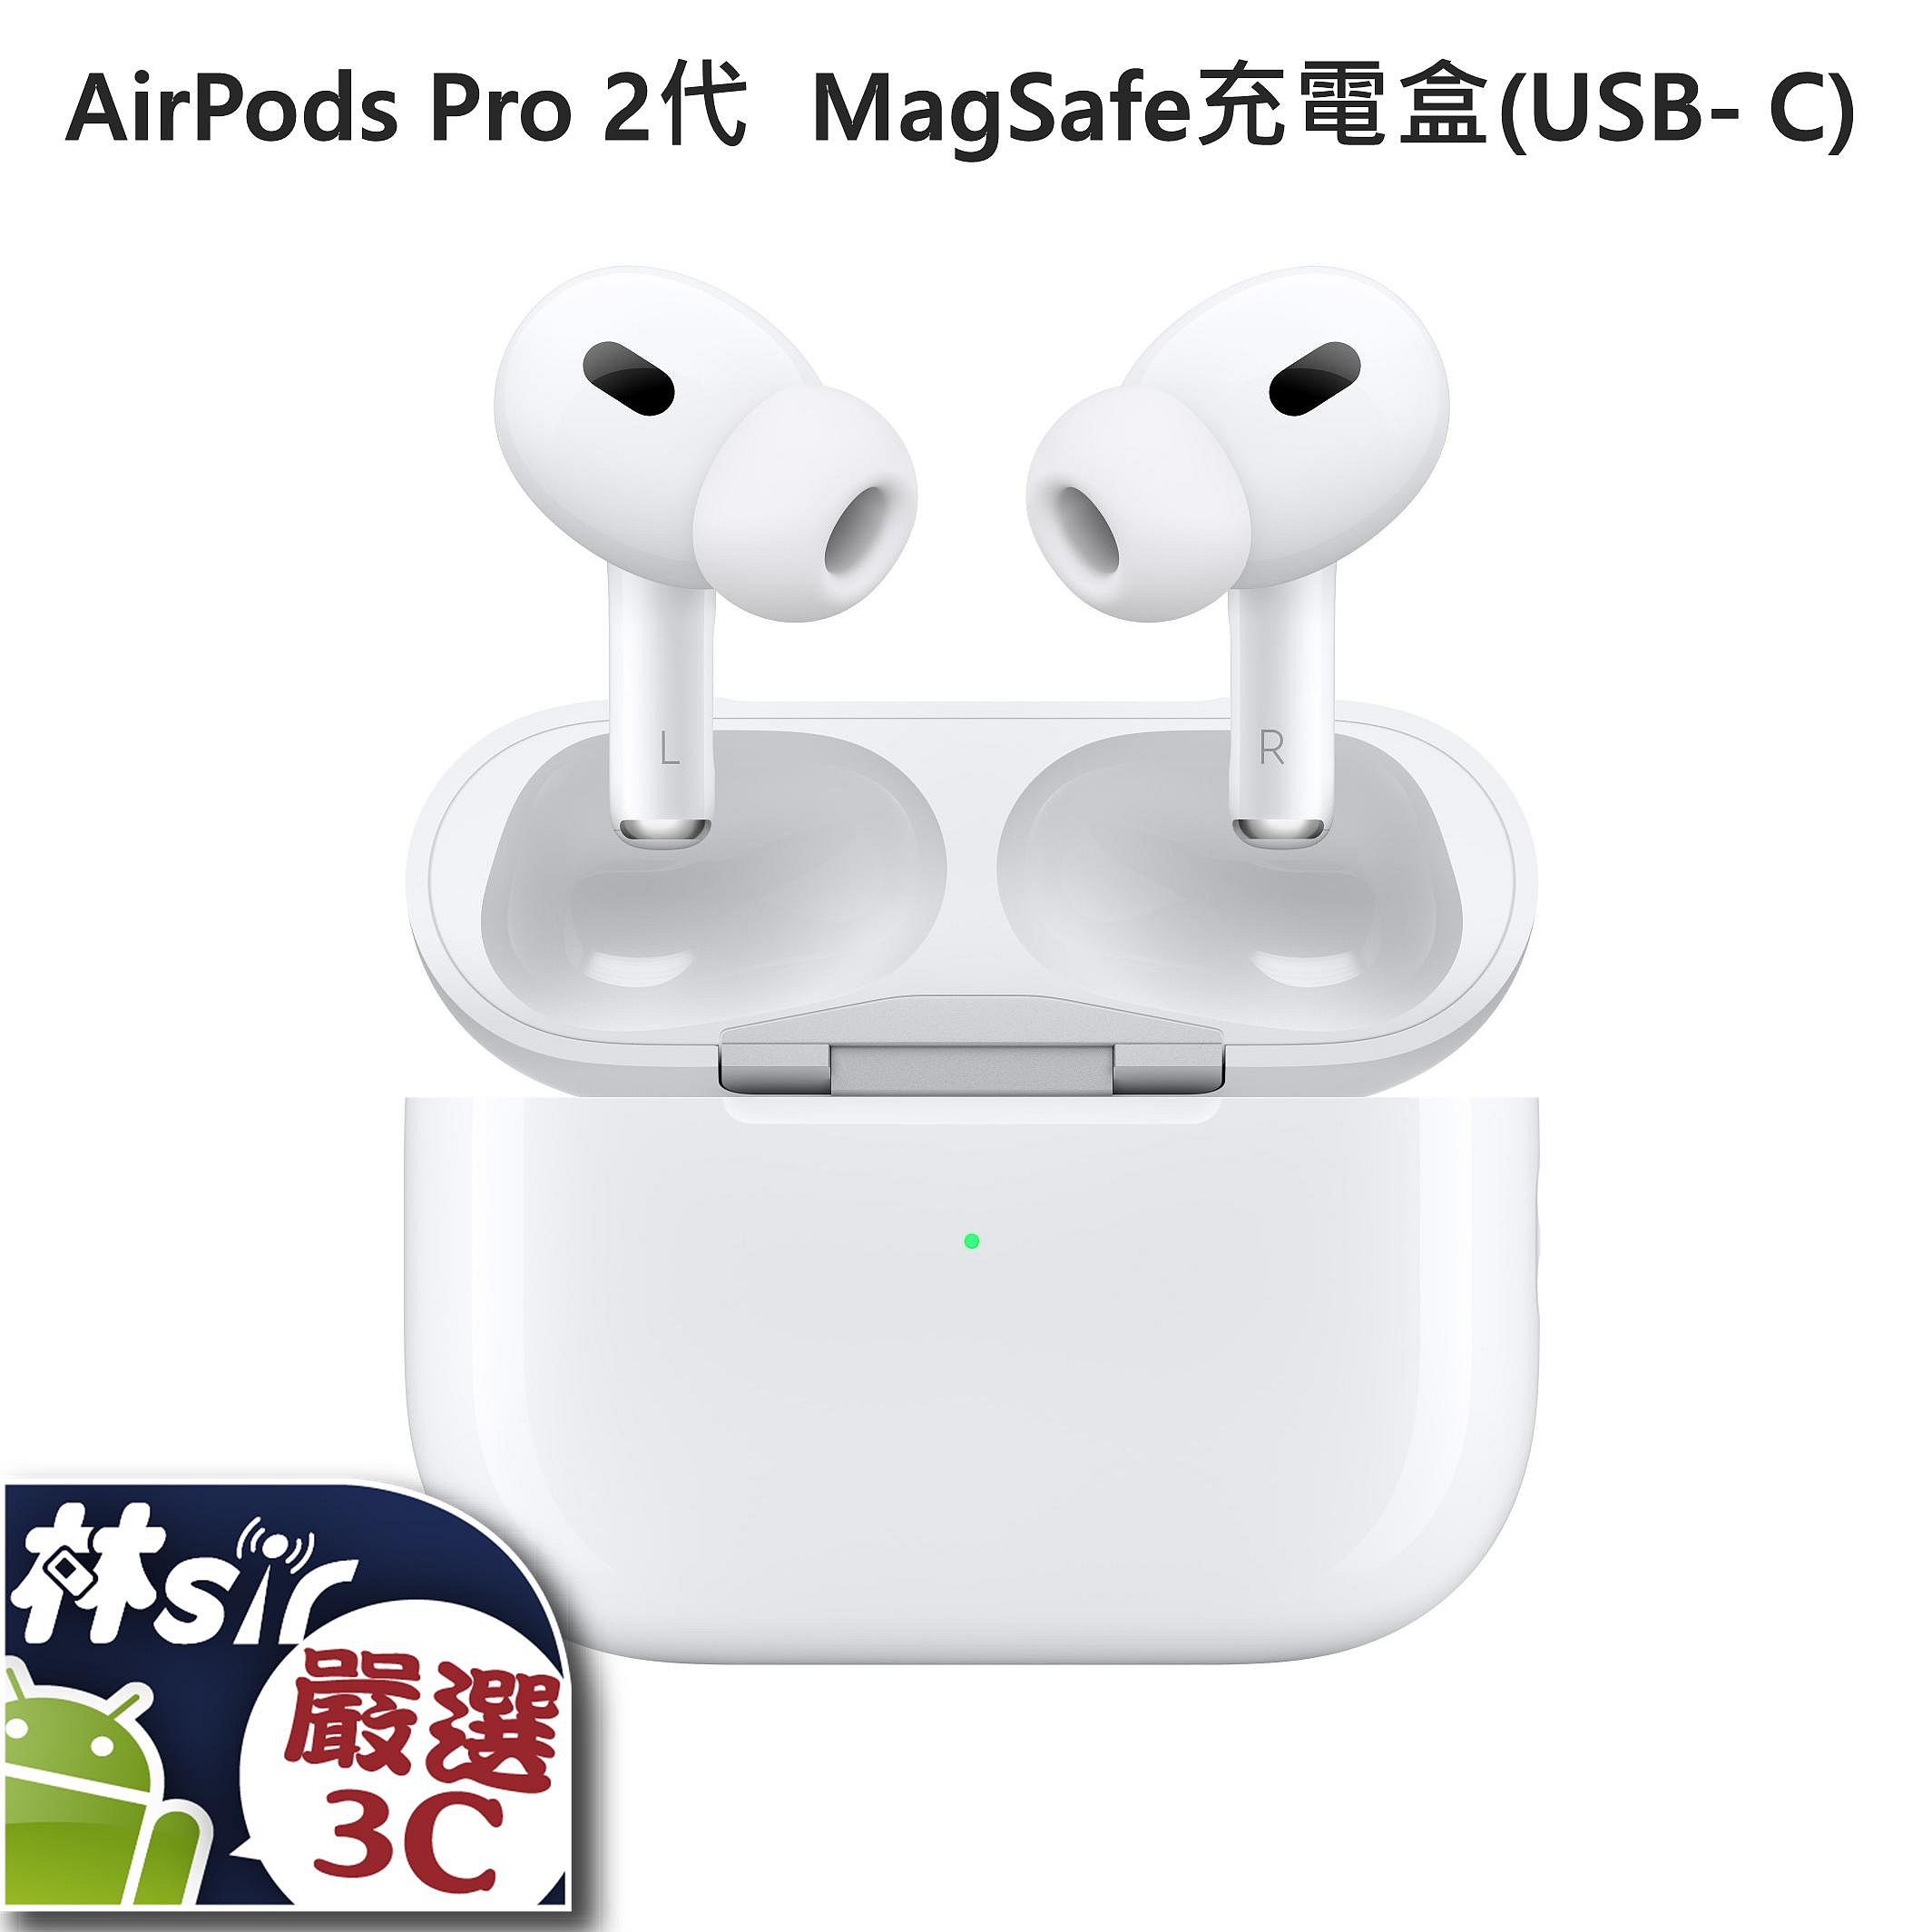 ☆林sir三多店☆ APPLE AirPods Pro 第2代 搭配 MagSafe 充電盒 USB-C 蘋果 無線藍牙耳機